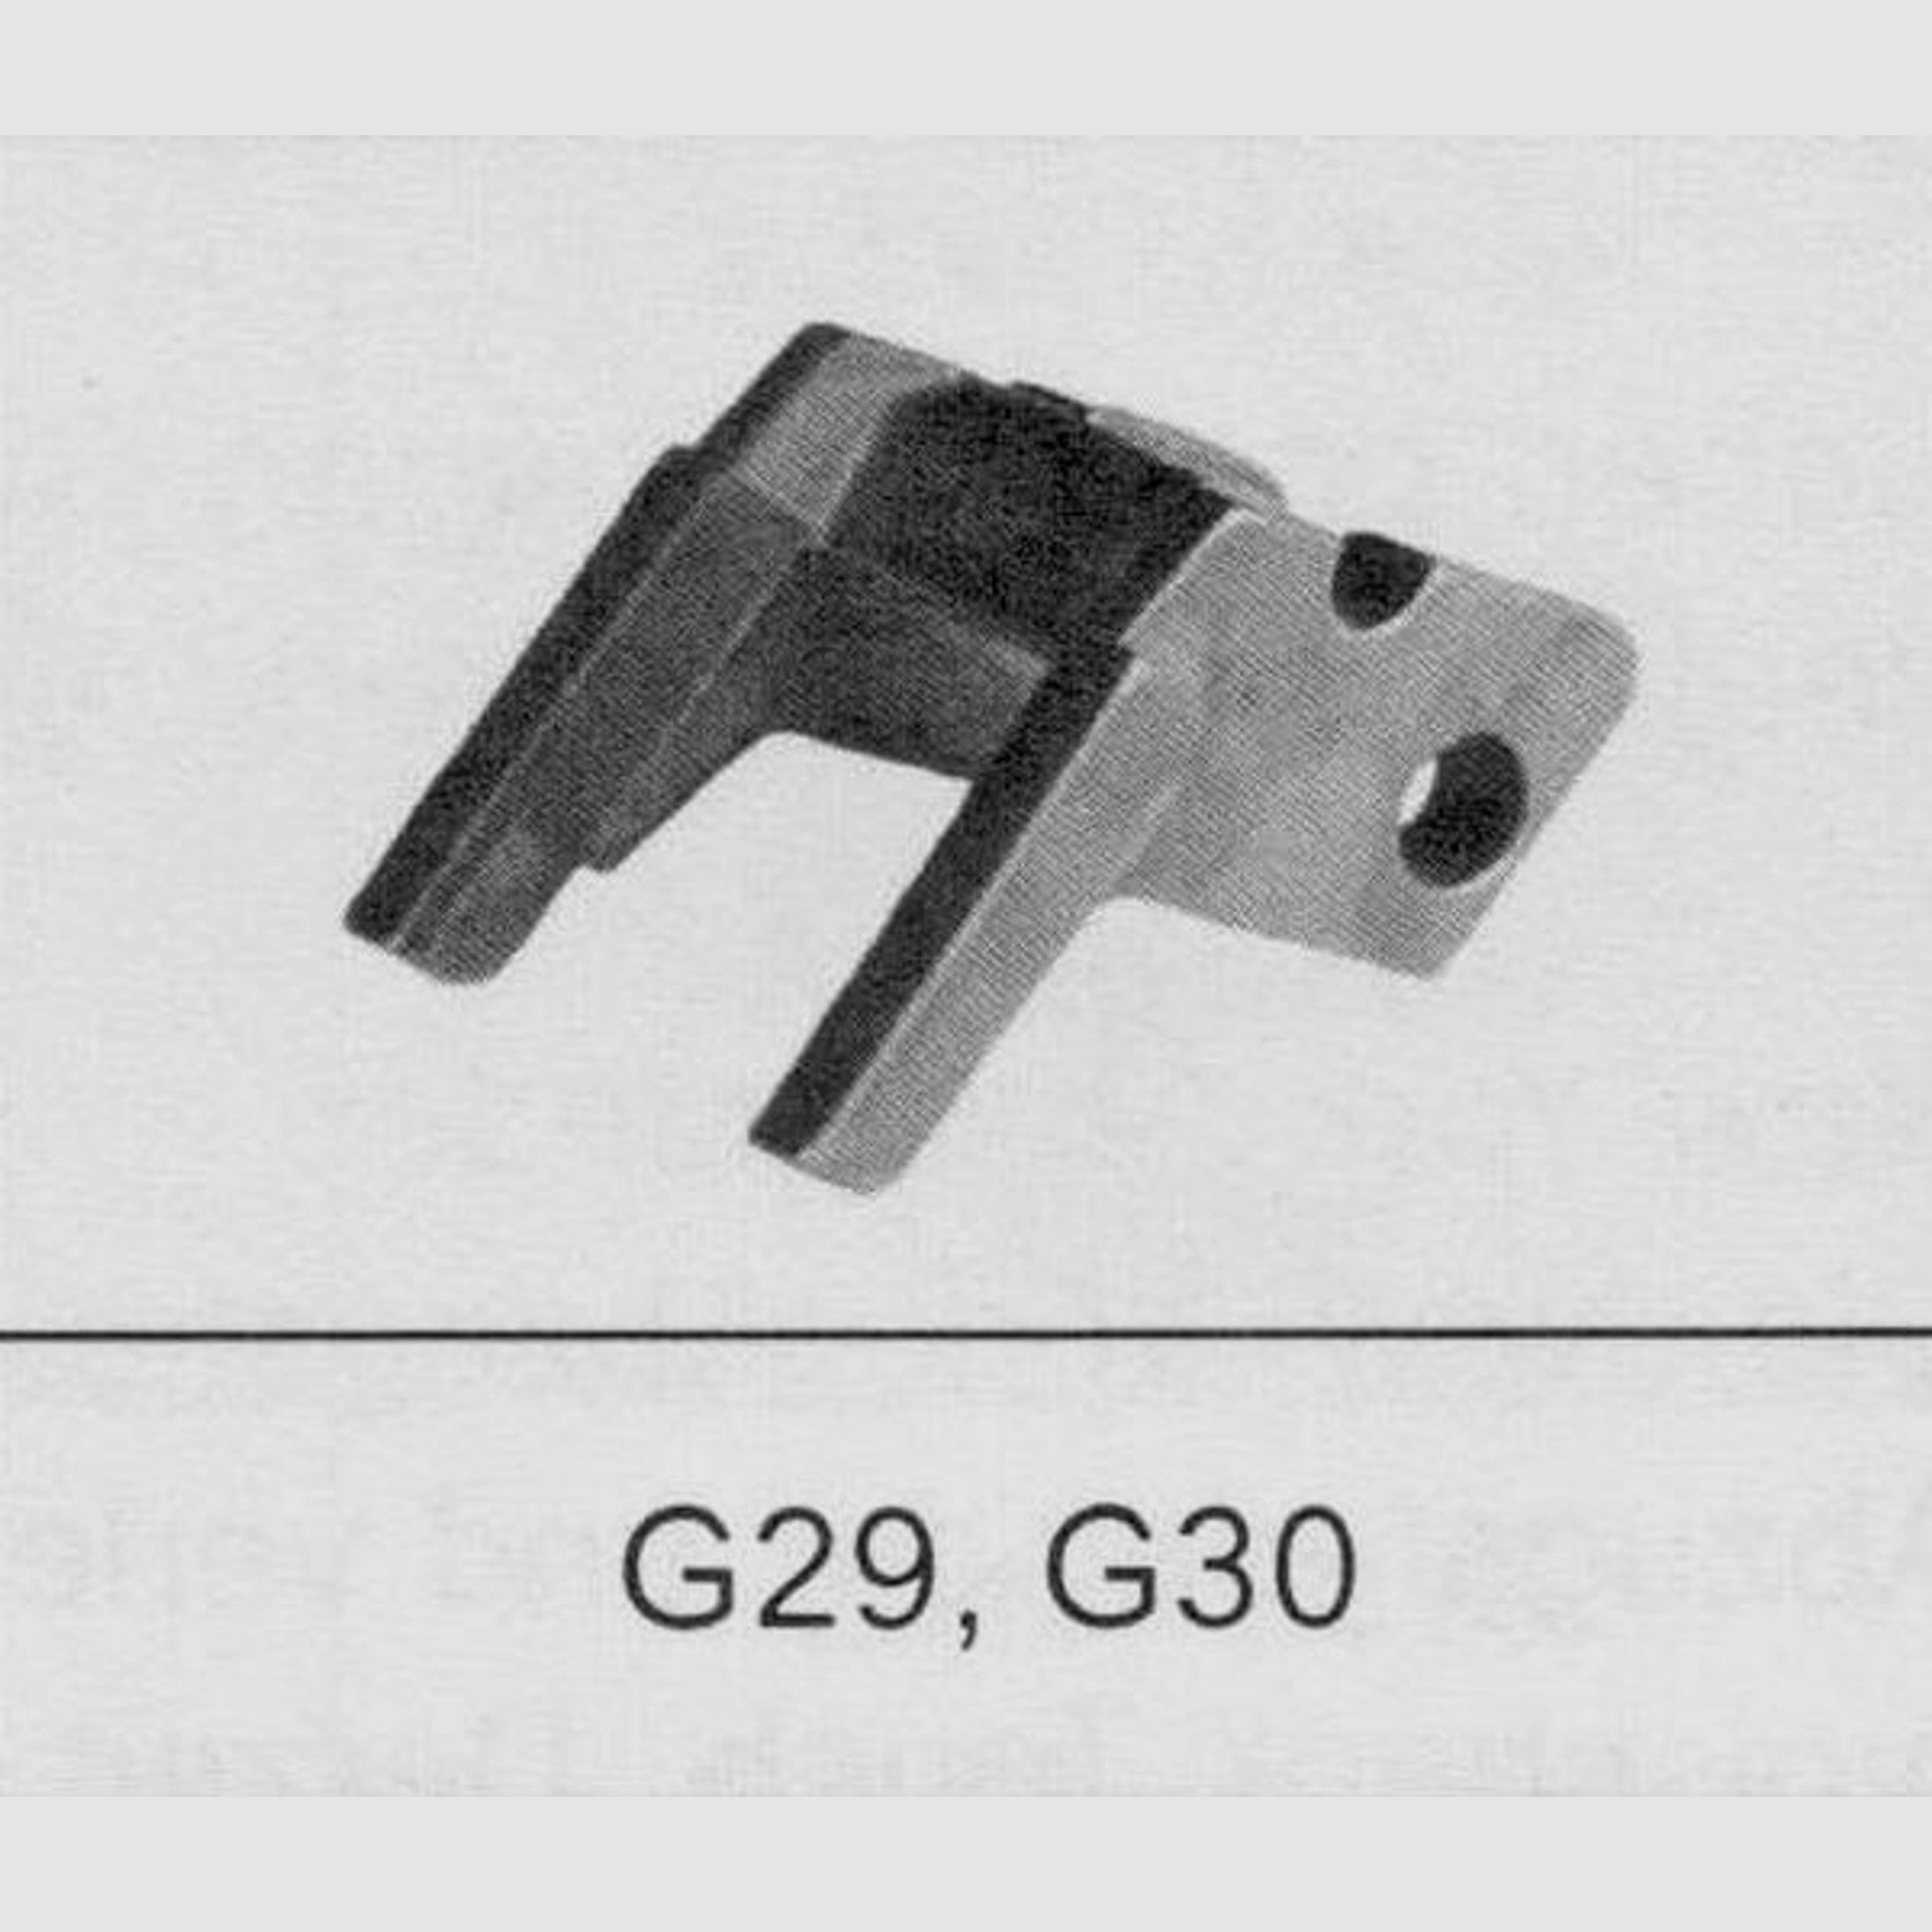 GLOCK Tuning/Ersatzteil f. Pistole Verriegelungsblock #22 Gen4 f. 29,30